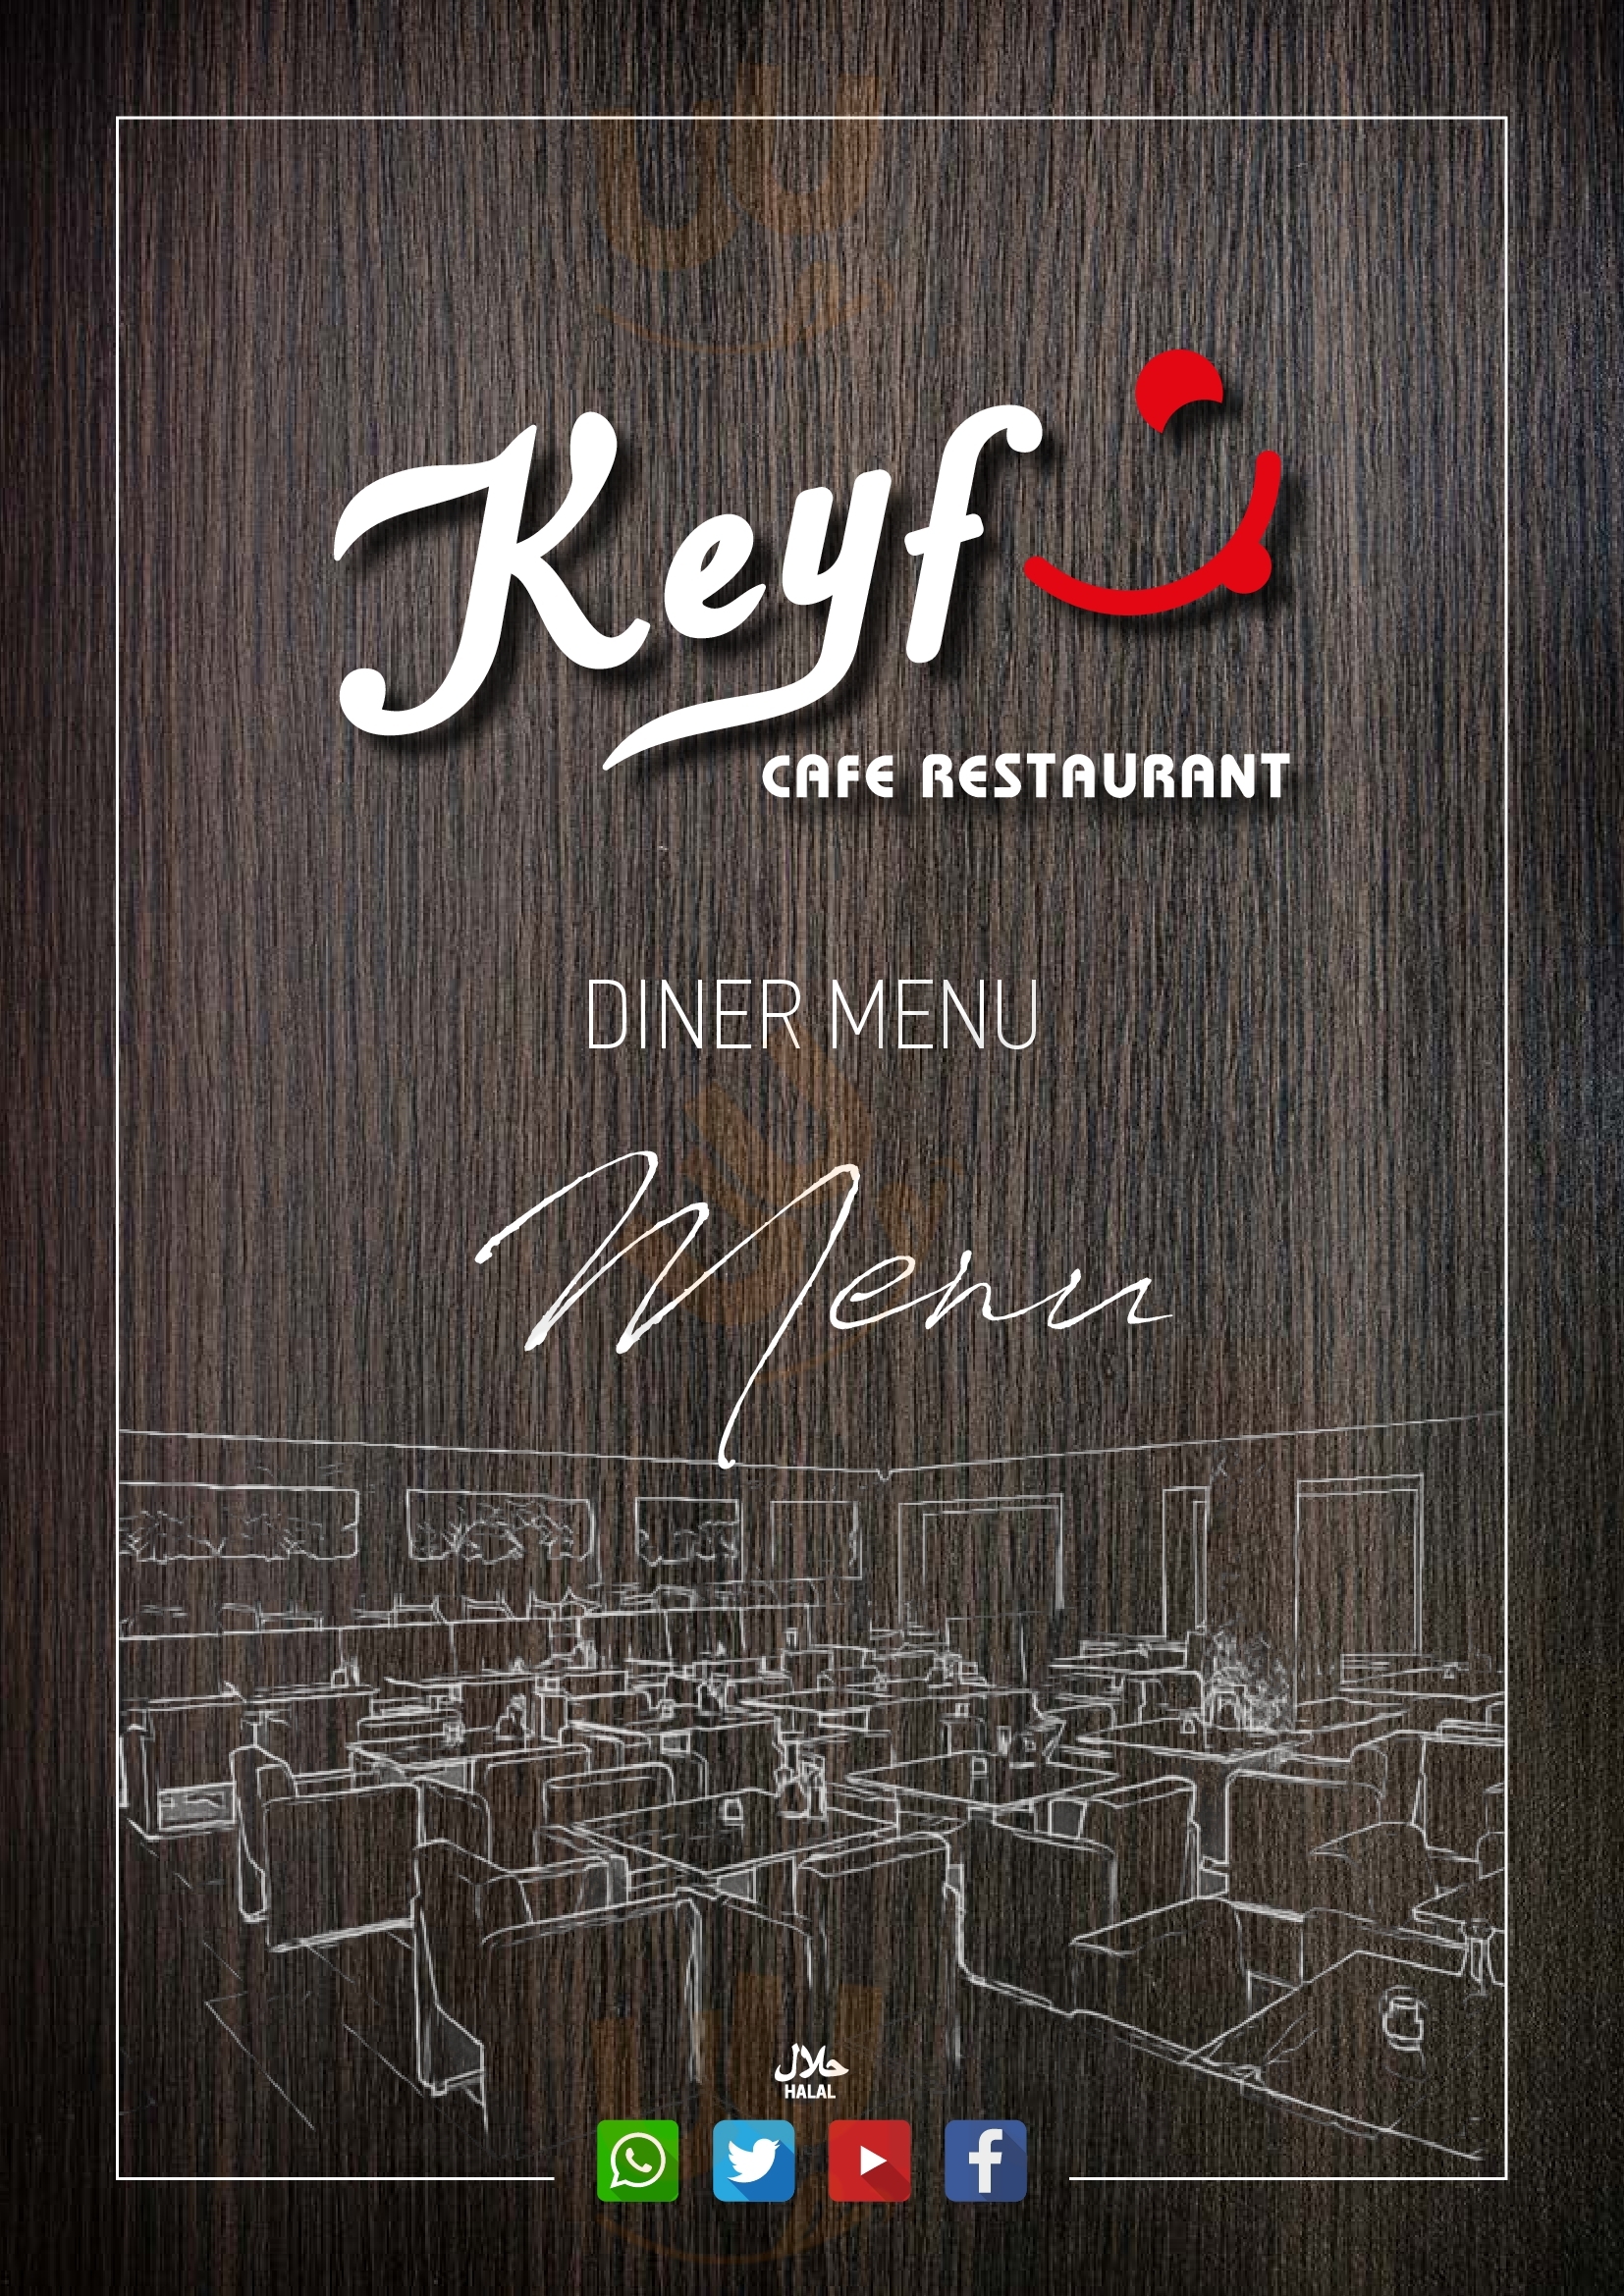 Keyf Cafe Restaurant Amsterdam Menu - 1